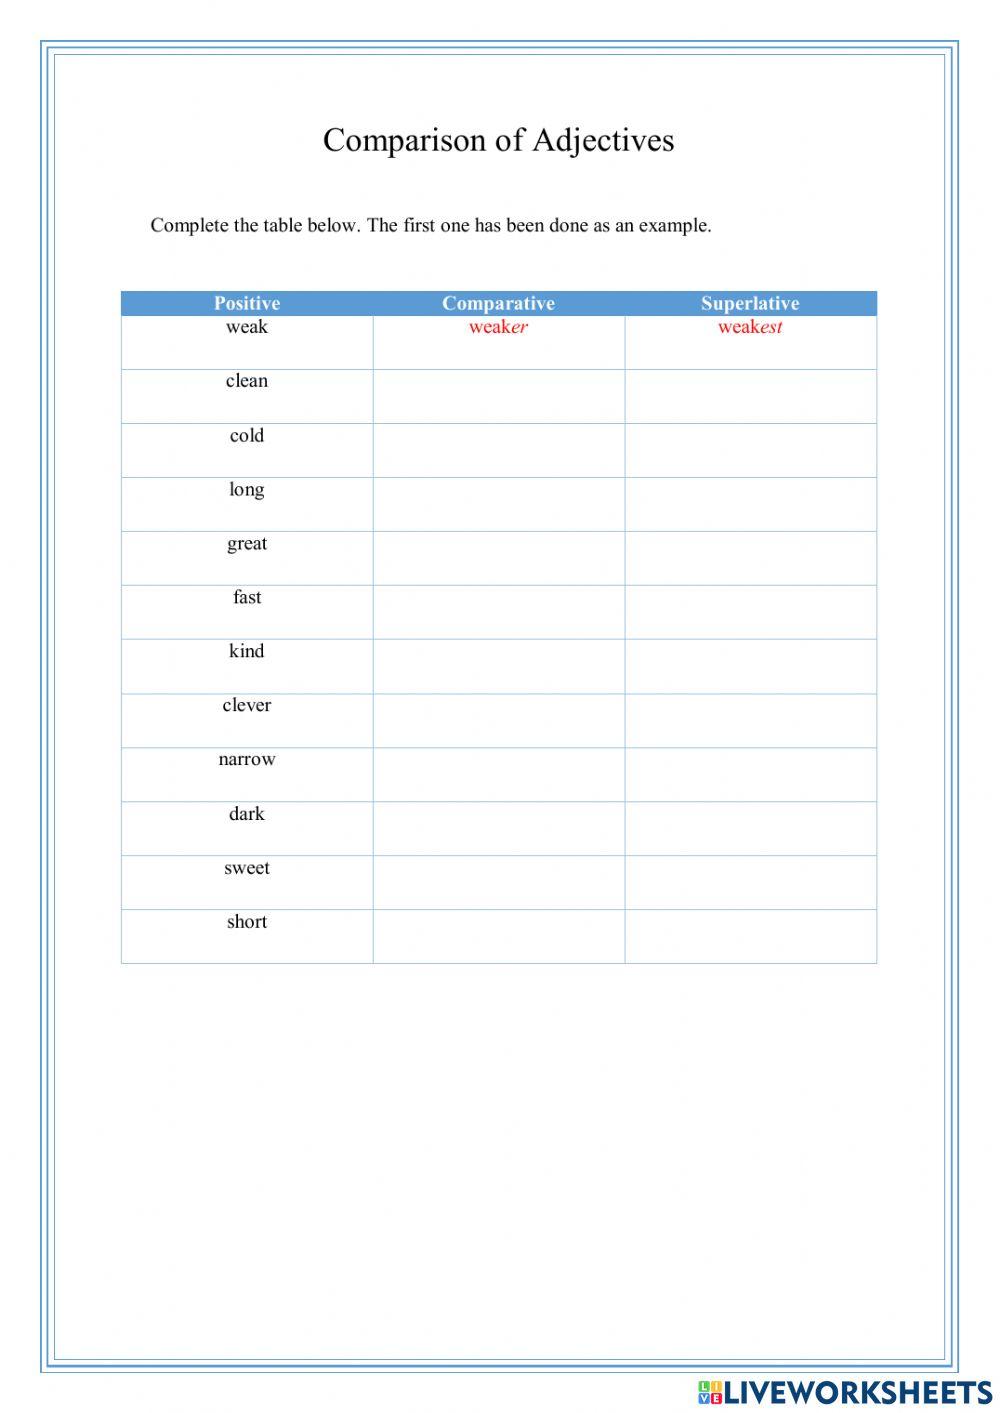 Comparison of Adjectives Live Worksheet01